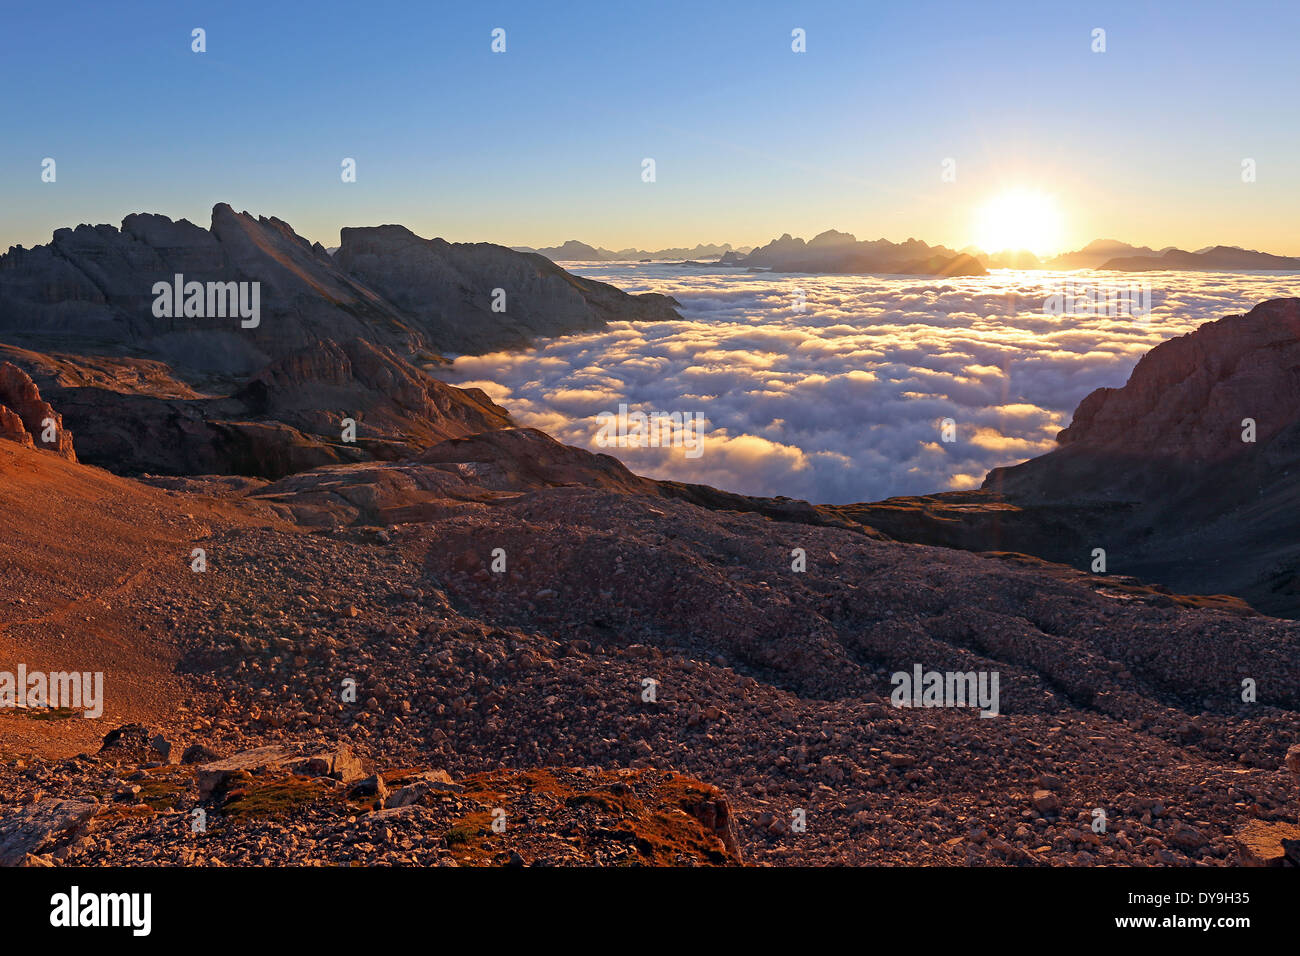 Latemar Berg Gruppe. Sonnenaufgang auf der Dolomiten, eine Flut von Wolken über dem Fleimstal und Fassatal. Trentino. Italienische Alpen. Europa. Stockfoto